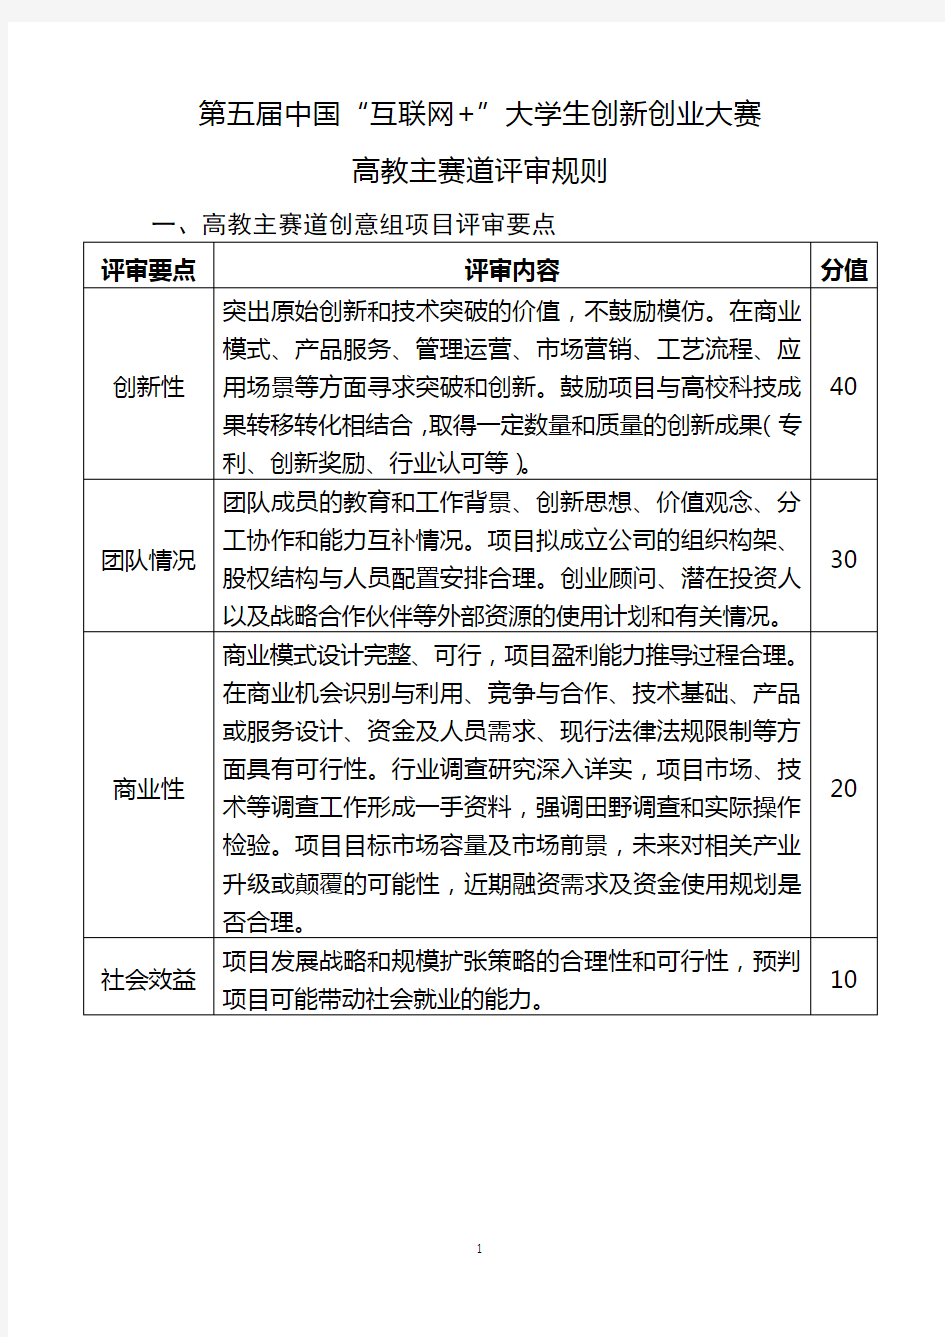 第五届中国“互联网+”大学生创新创业大赛评审规则(正式发布)